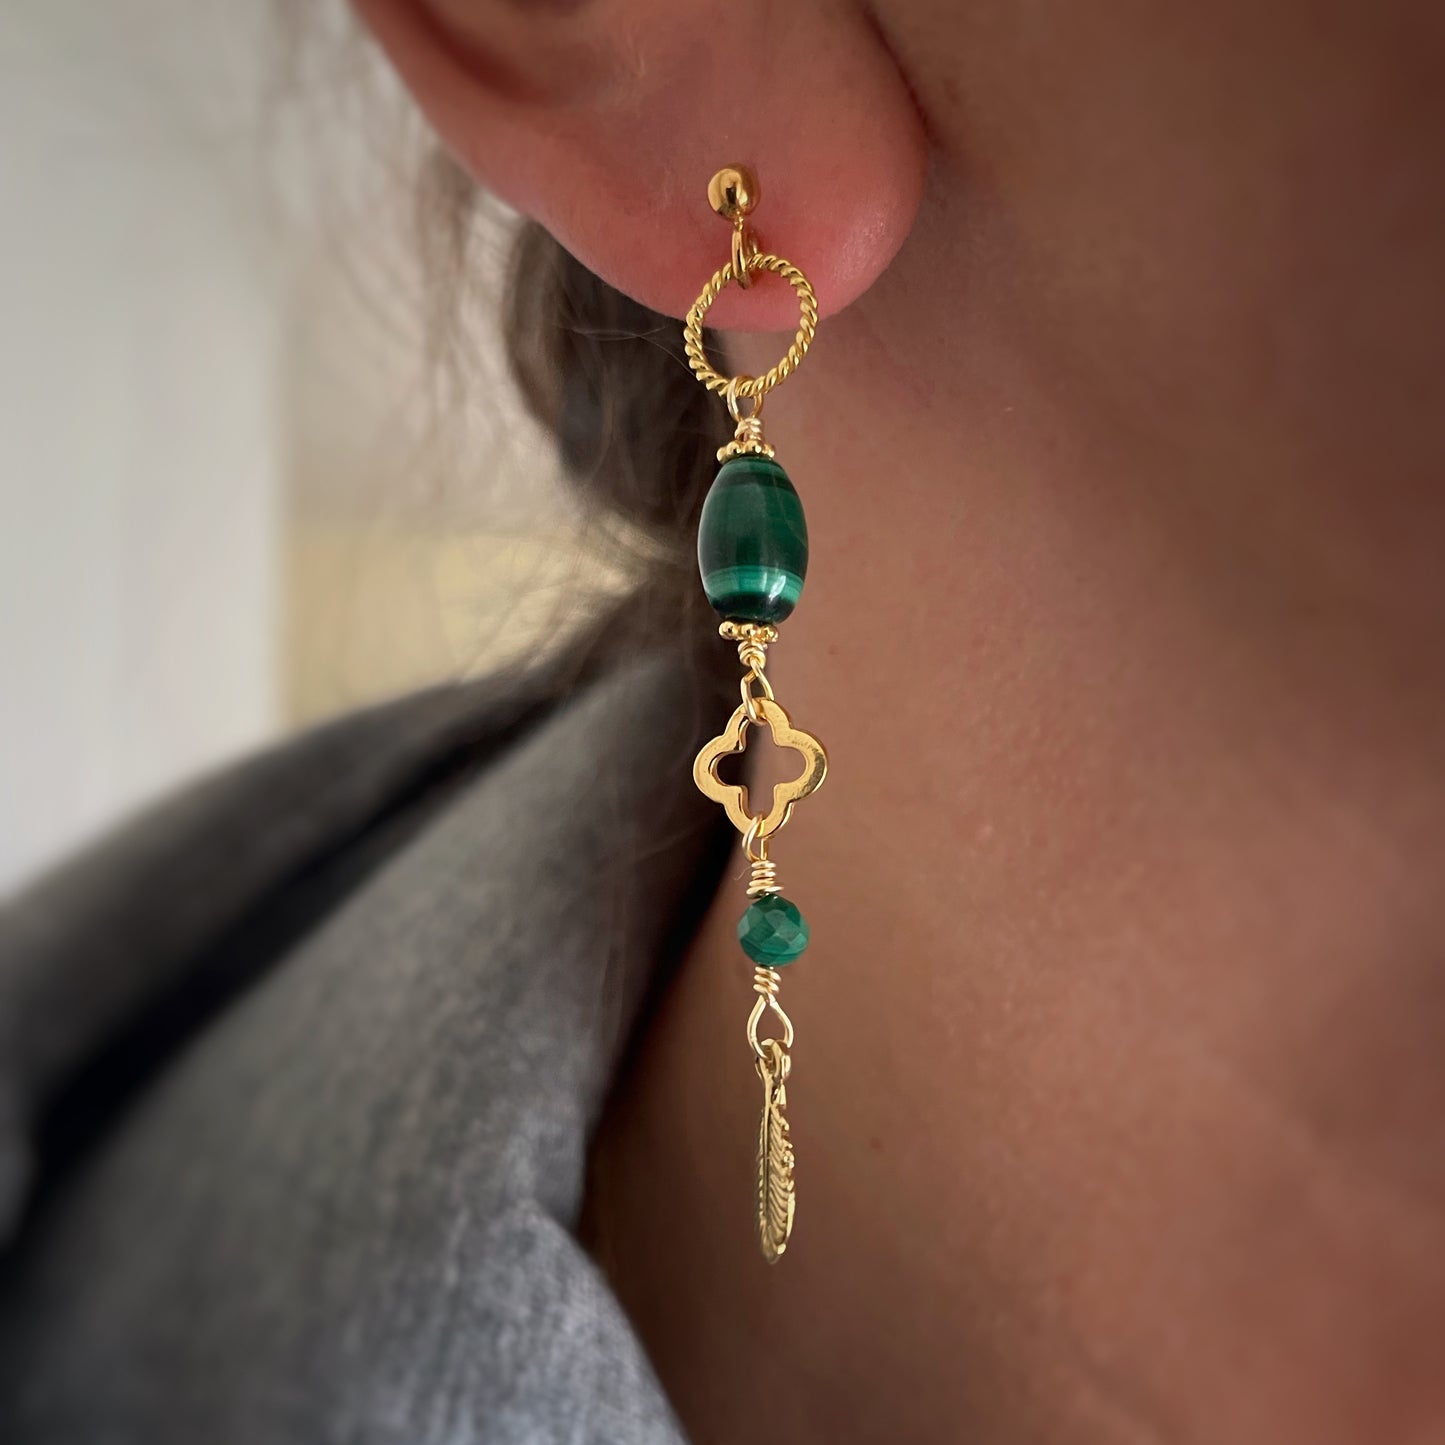 Arwen earrings